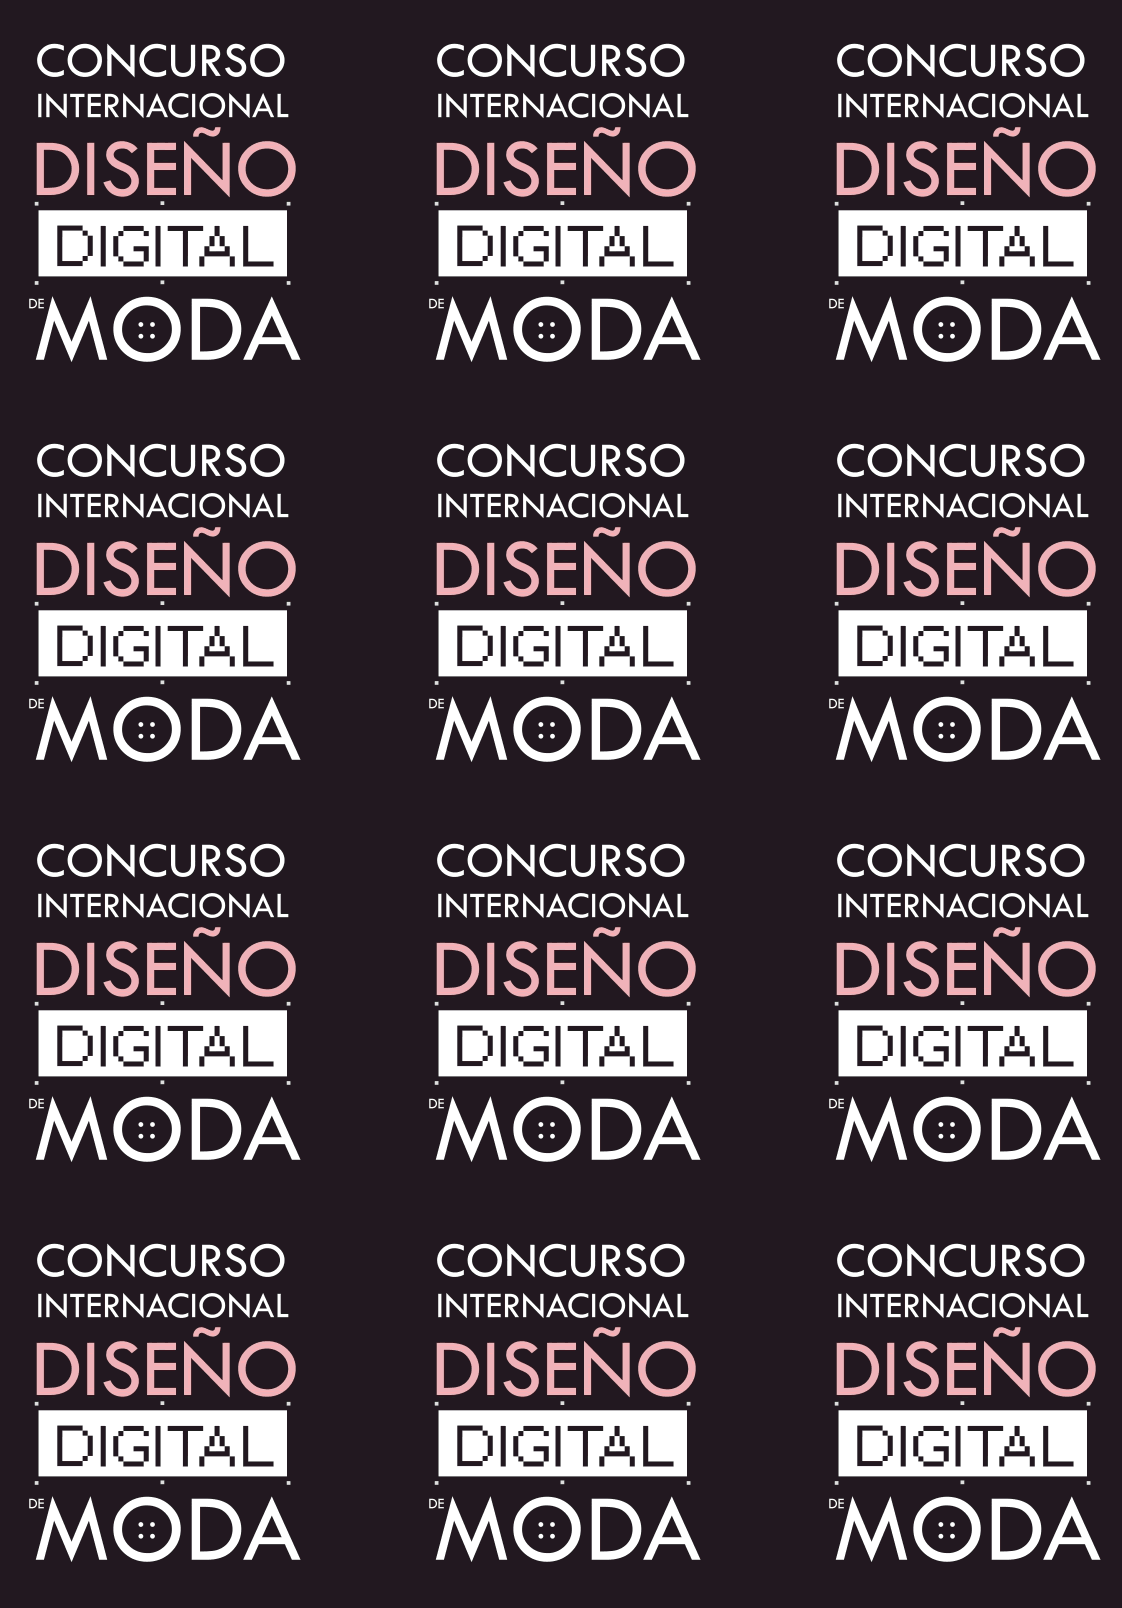 Logo Concurso Internacional Diseño Digital de MODA 2017